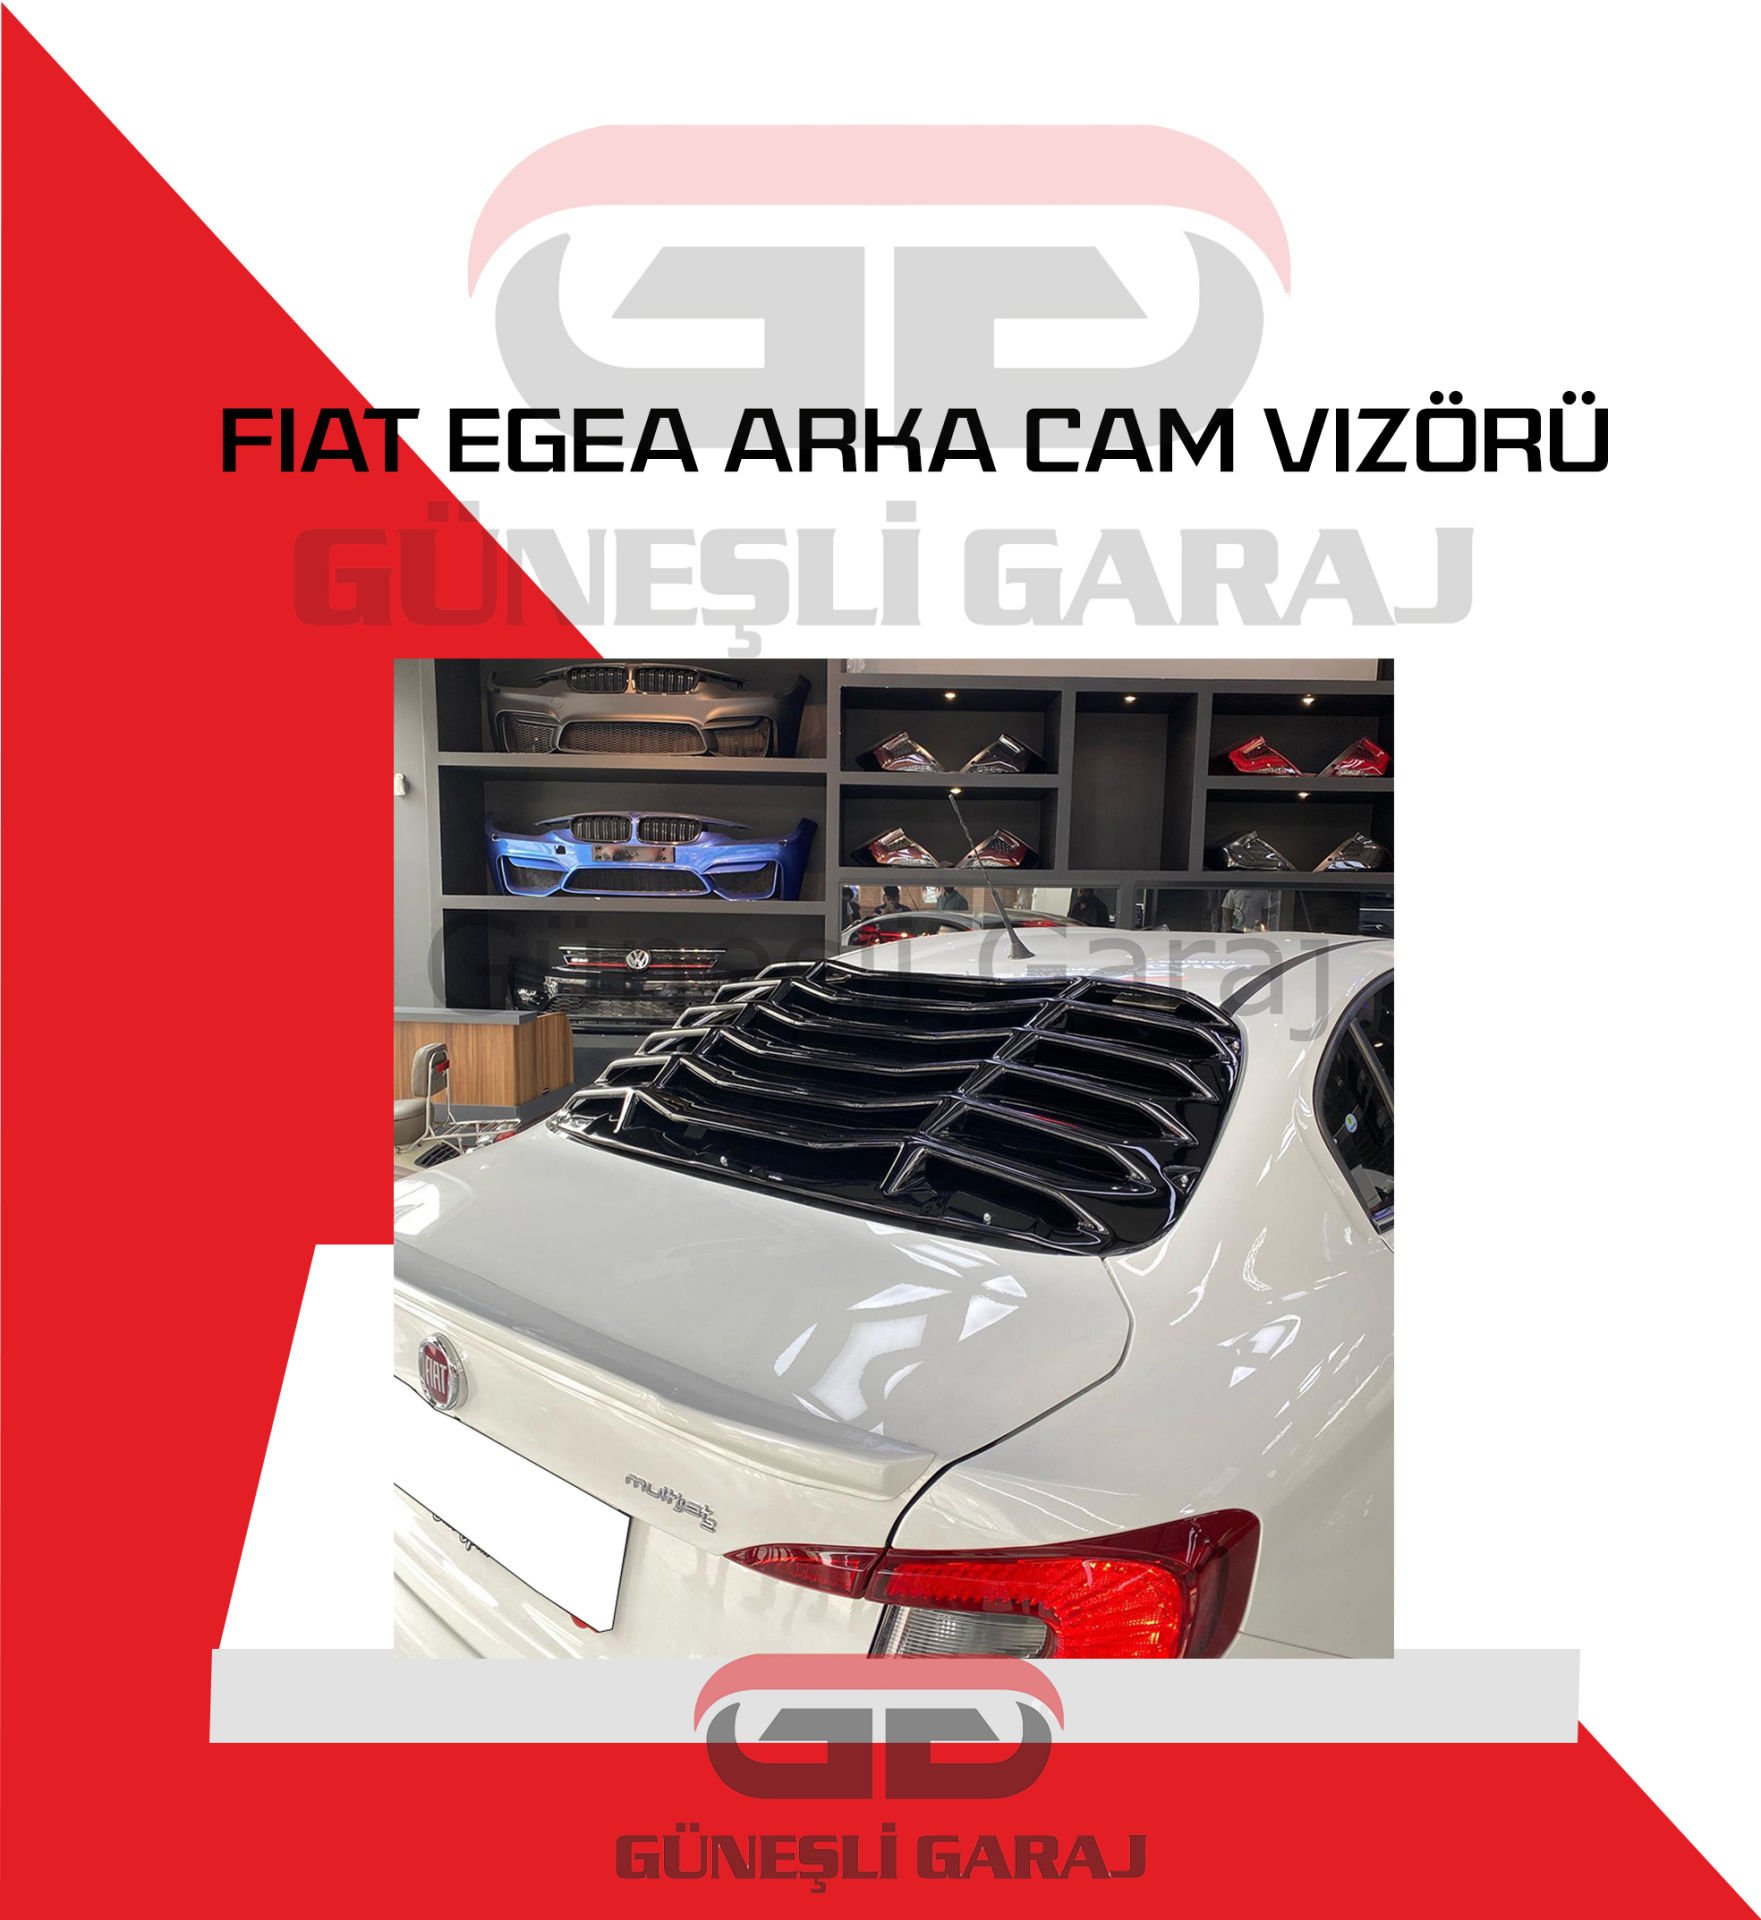 Fiat Egea Arka Cam Vizörü